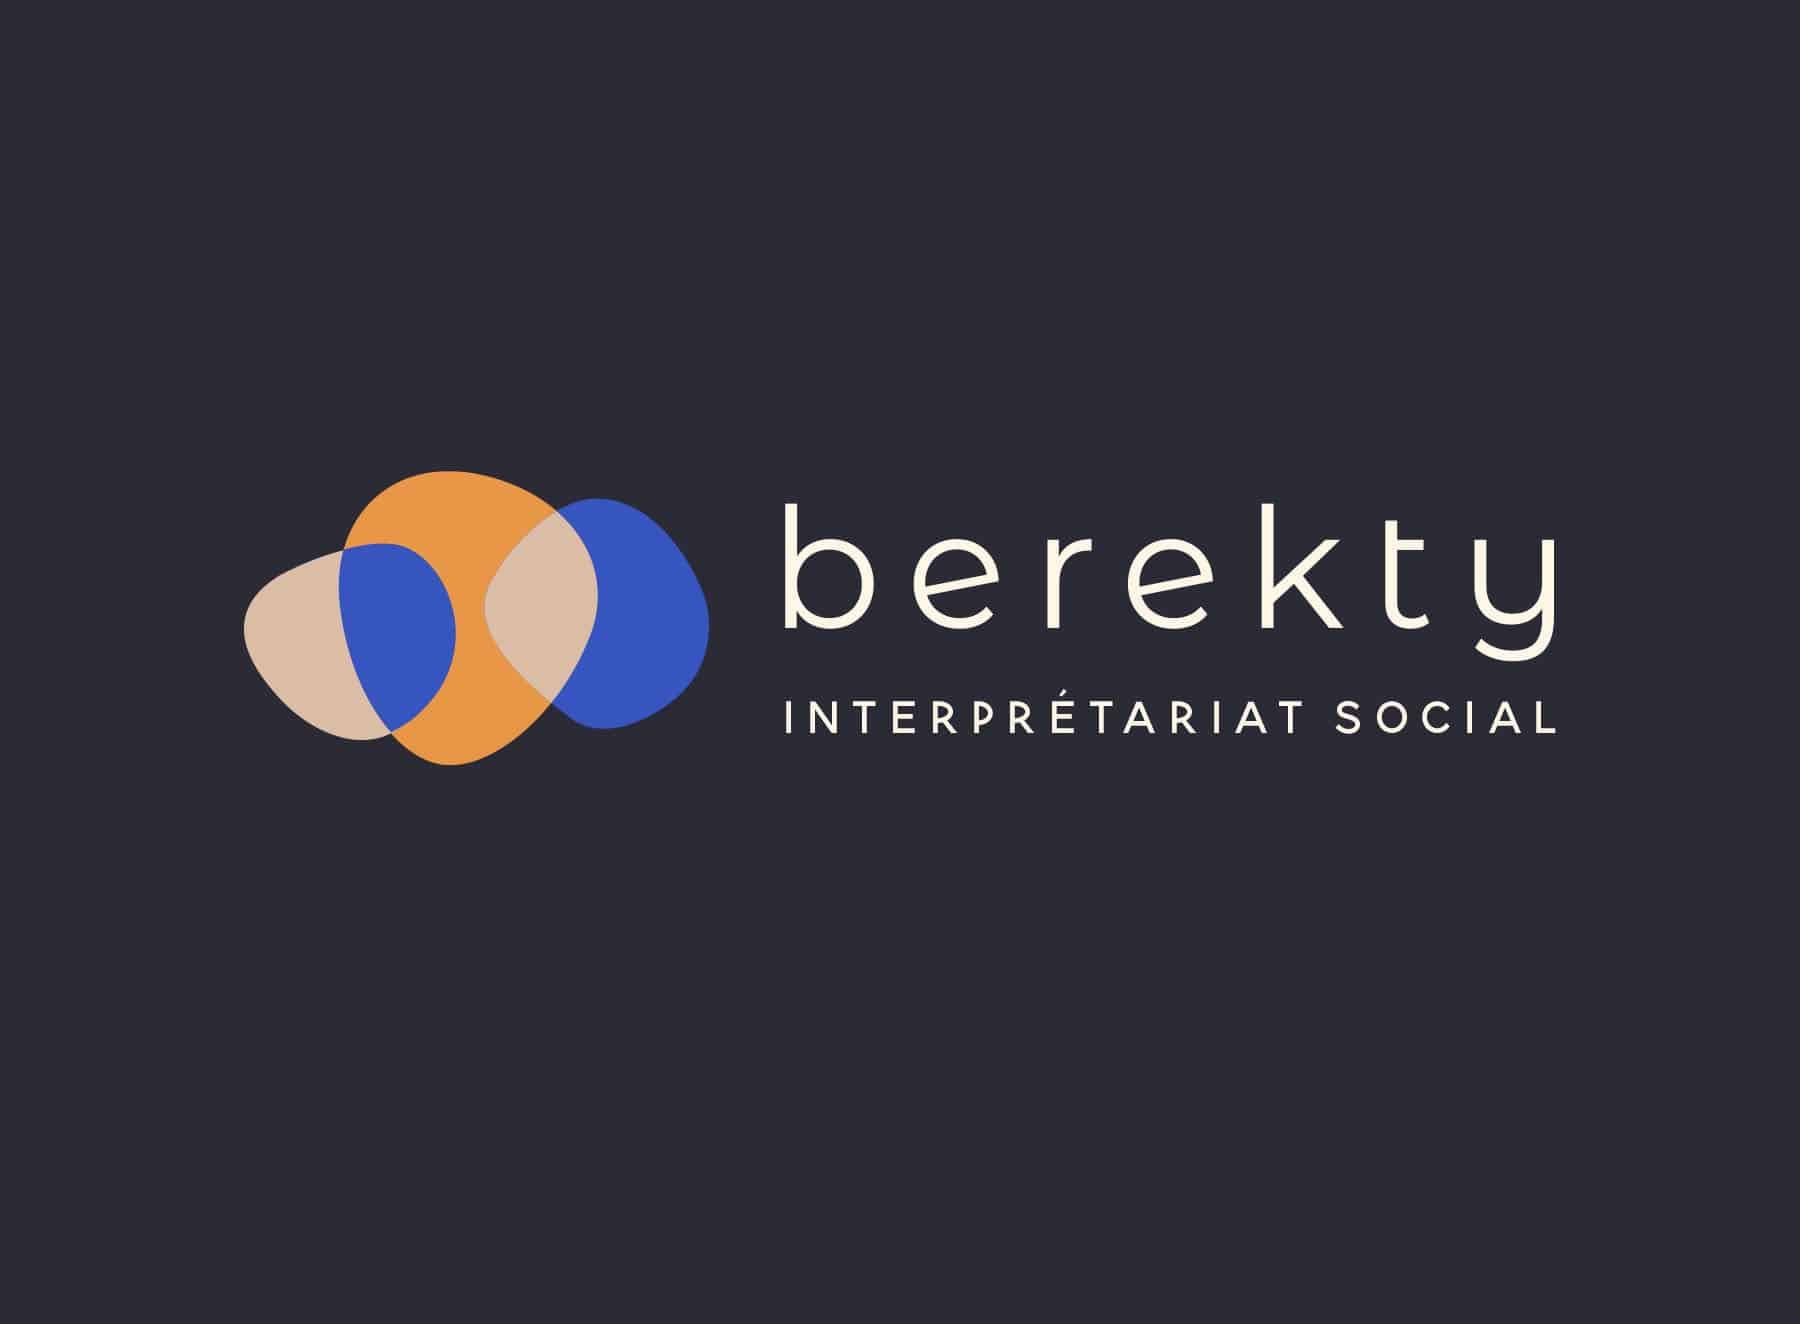 berekty logo 2